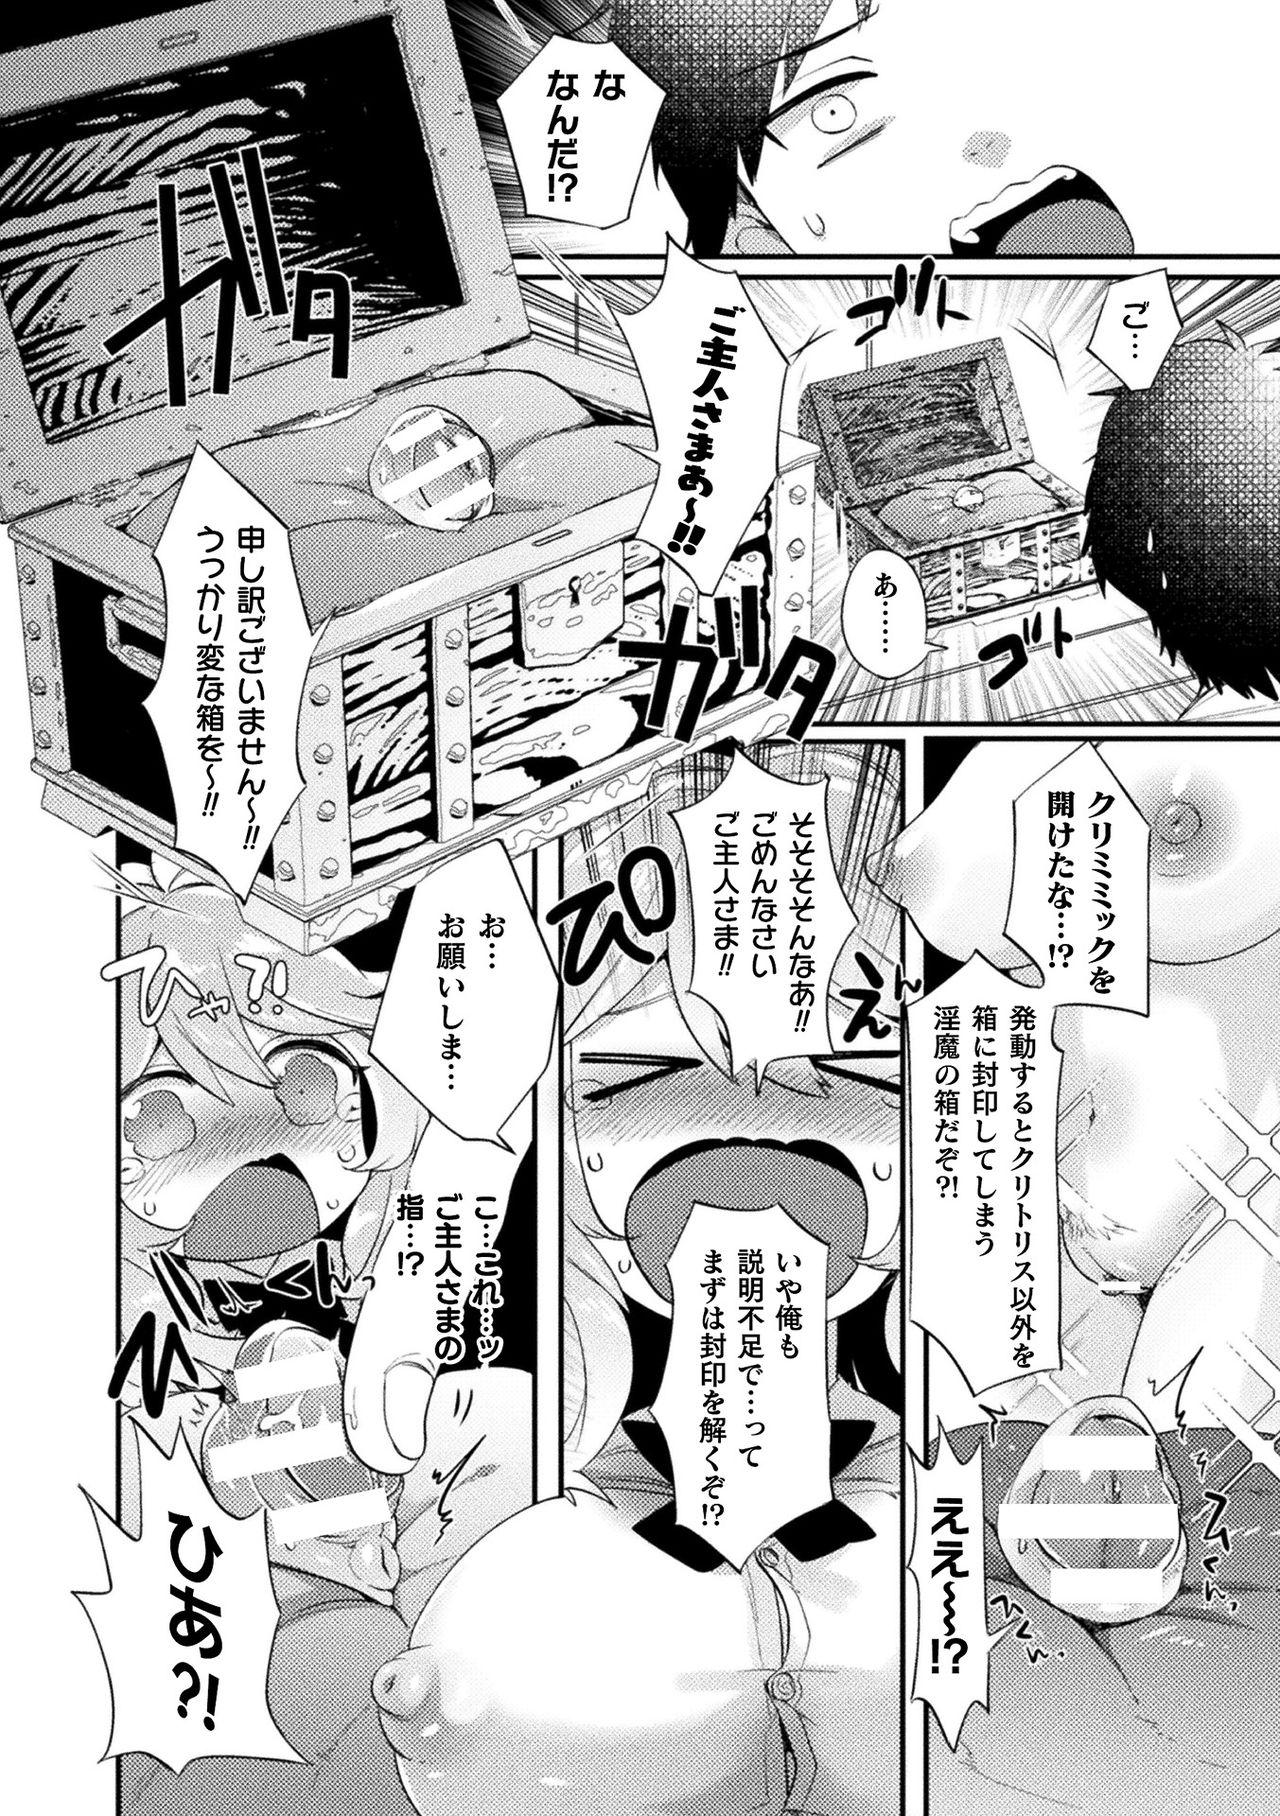 [Anthology] Bessatsu Comic Unreal Ponkotsu Fantasy Heroine H ~Doji o Funde Gyakuten Saretari Ero Trap ni Hamattari!?~ Vol. 1 [Digital] 6